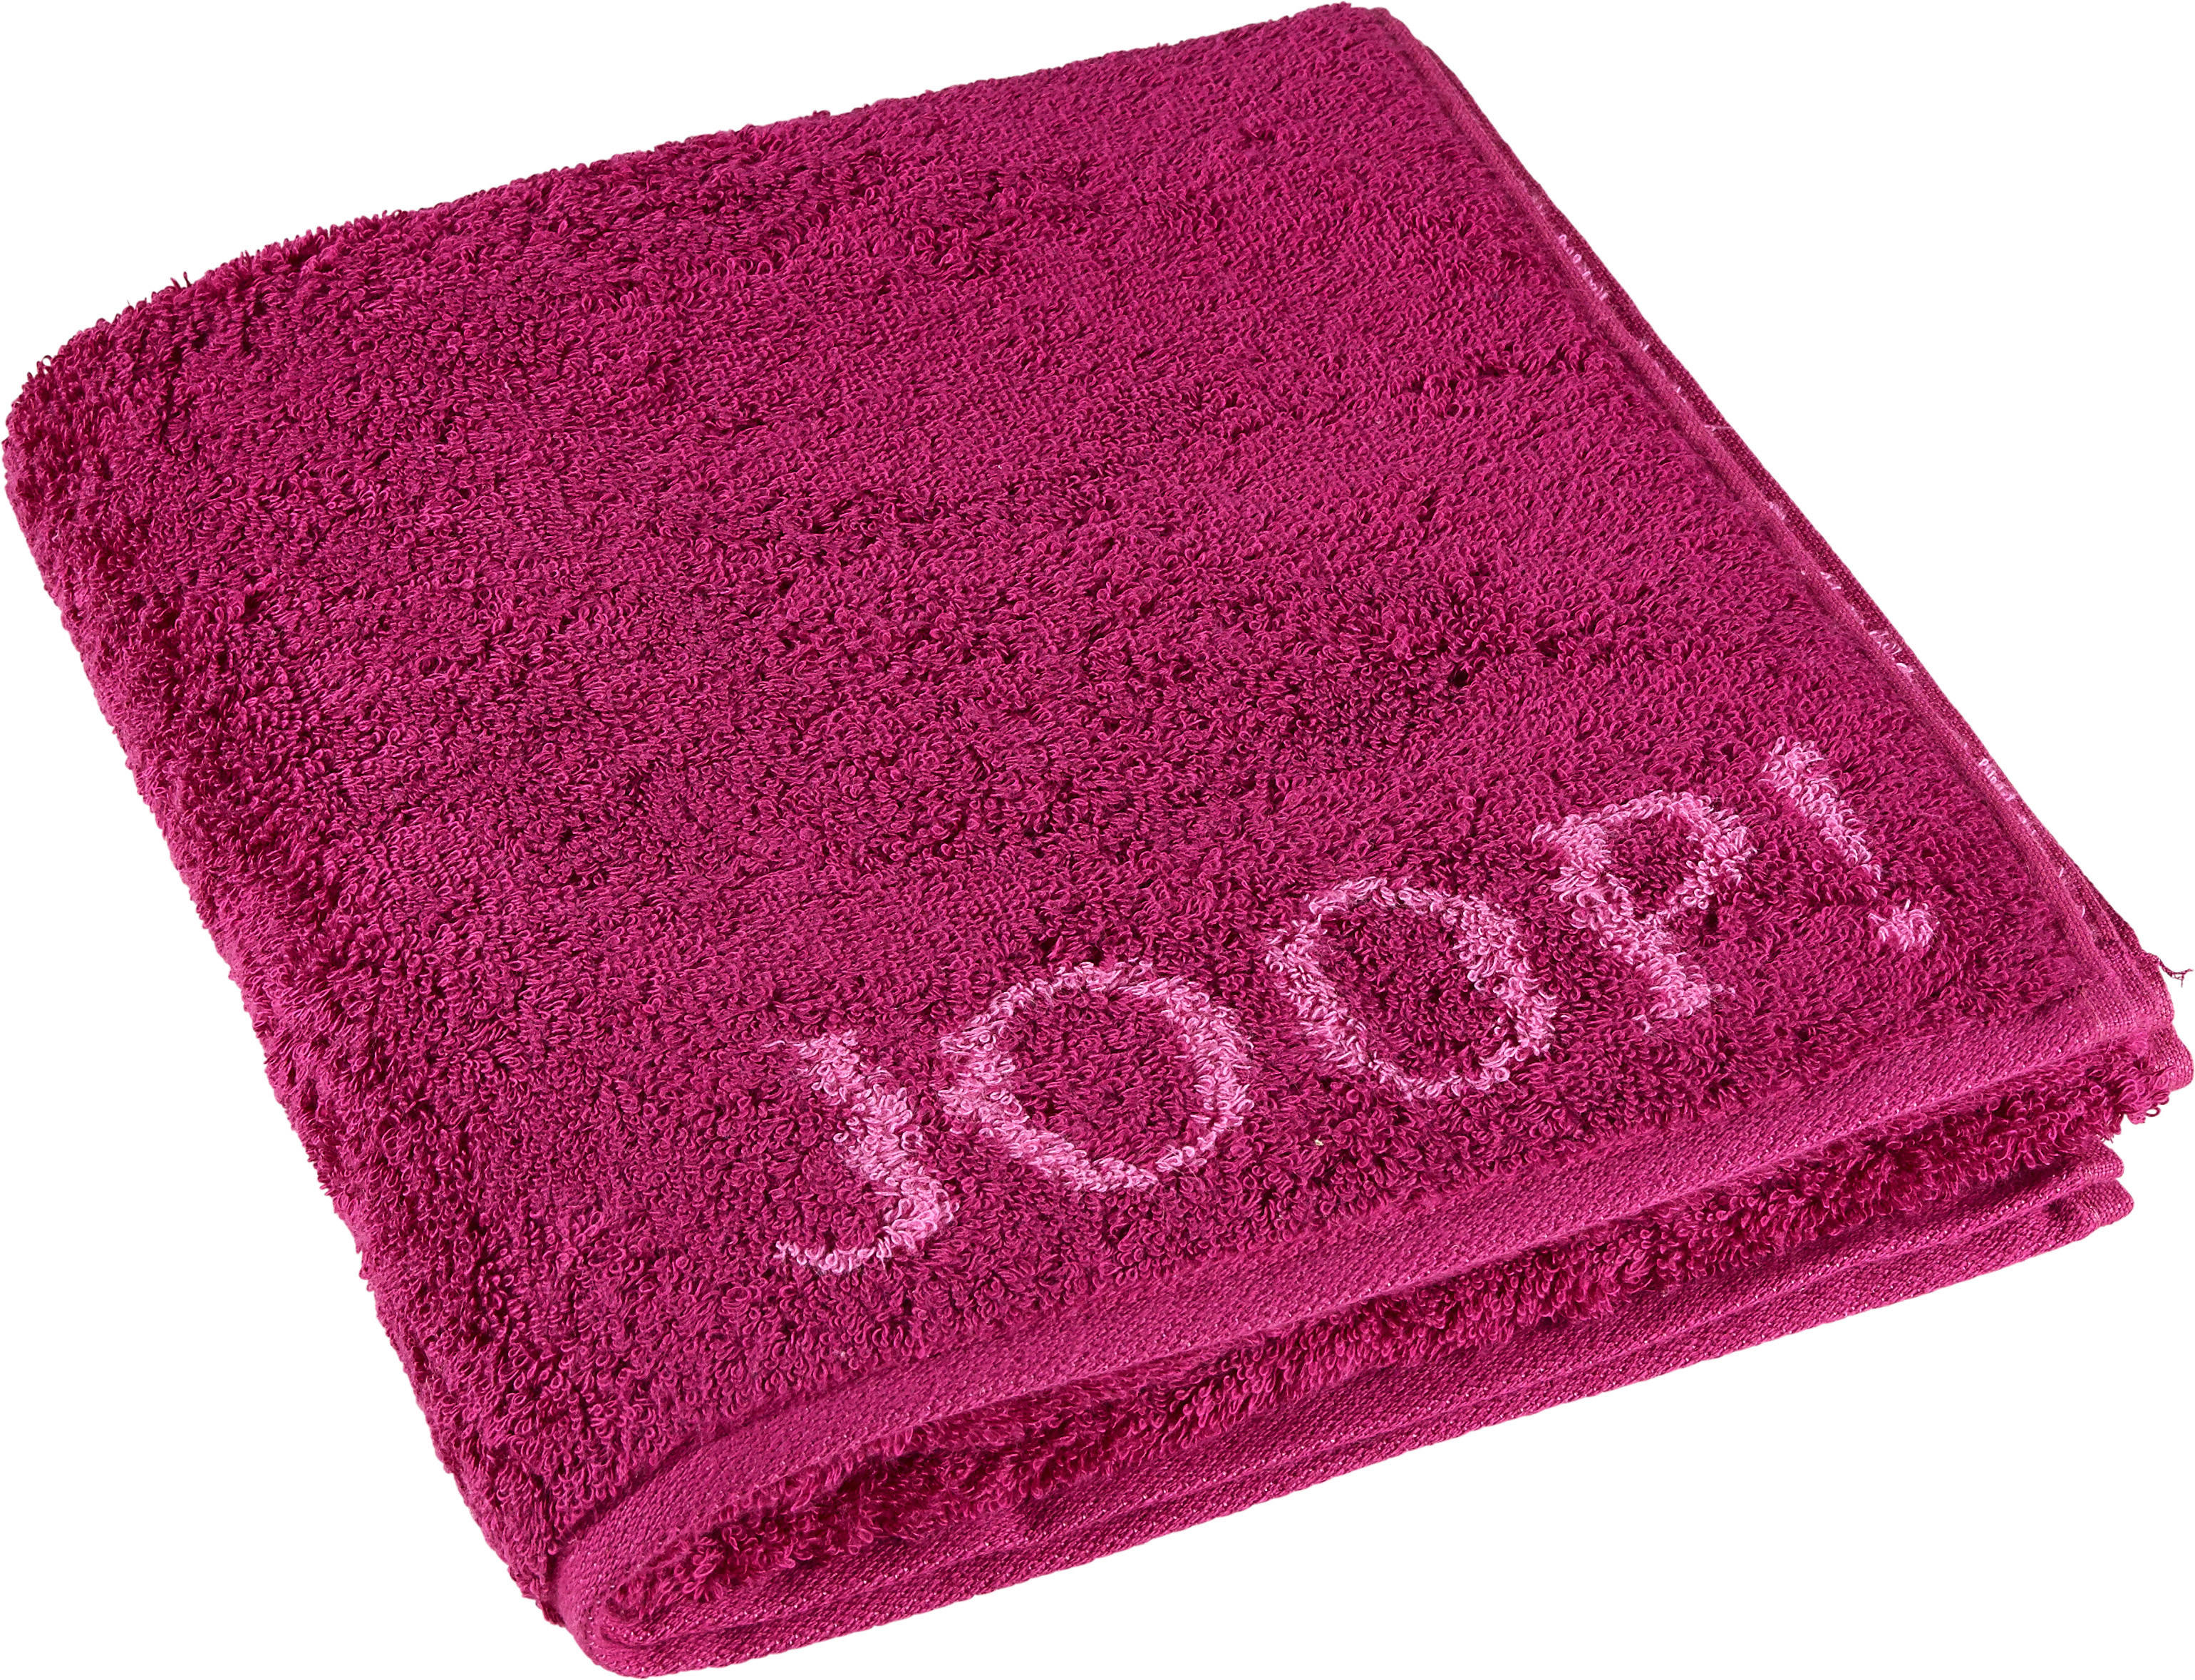 UTERÁK NA RUKY, 50/100 cm, pink - pink, Design, textil (50/100cm) - Joop!